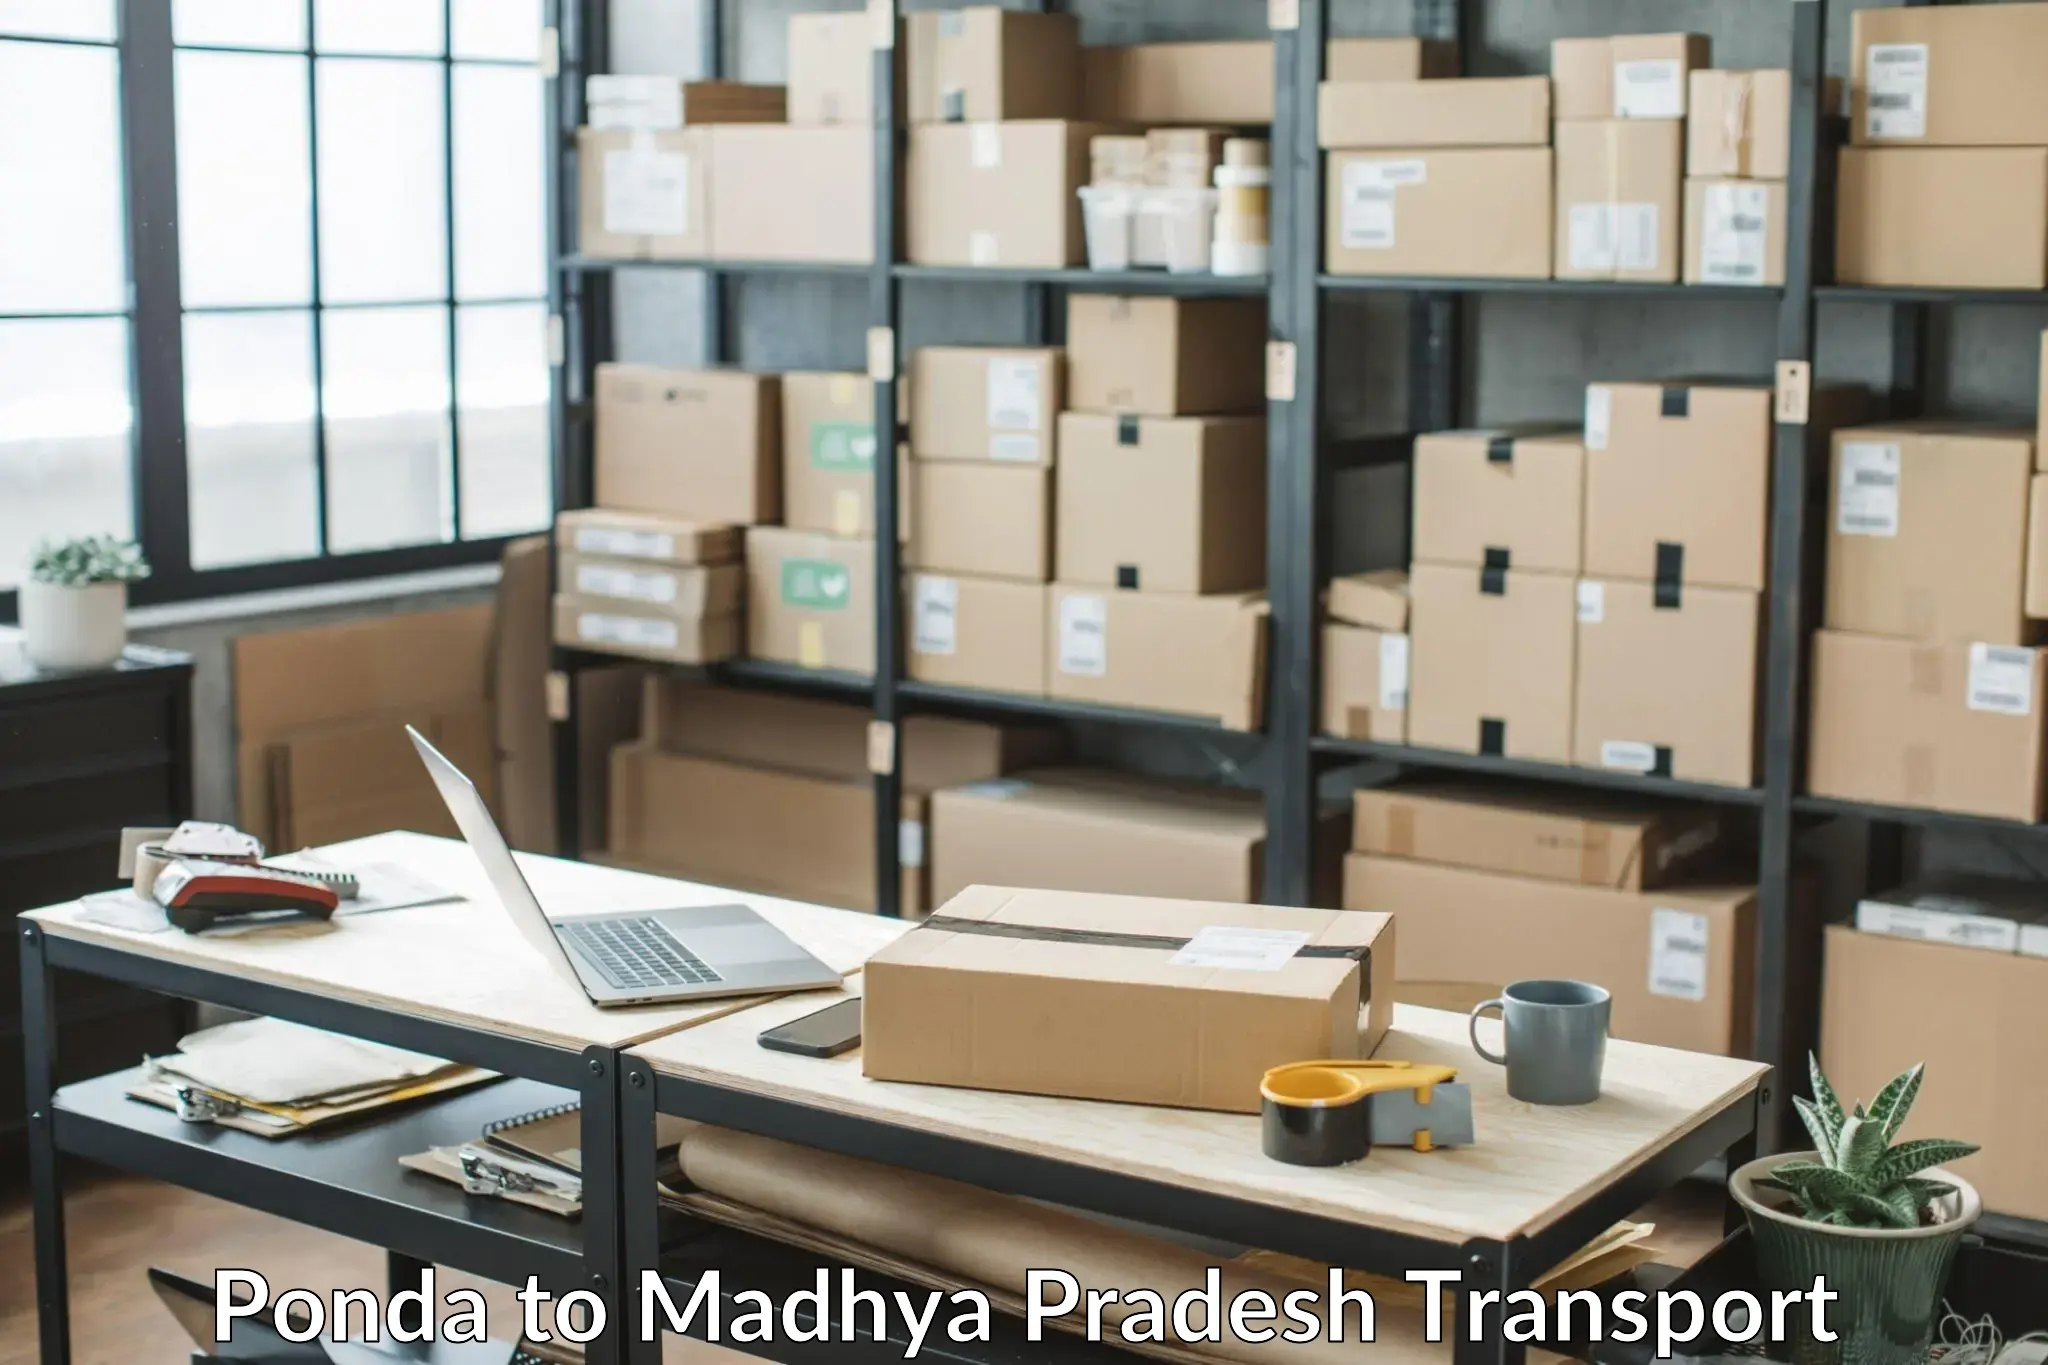 Furniture transport service Ponda to Begumganj